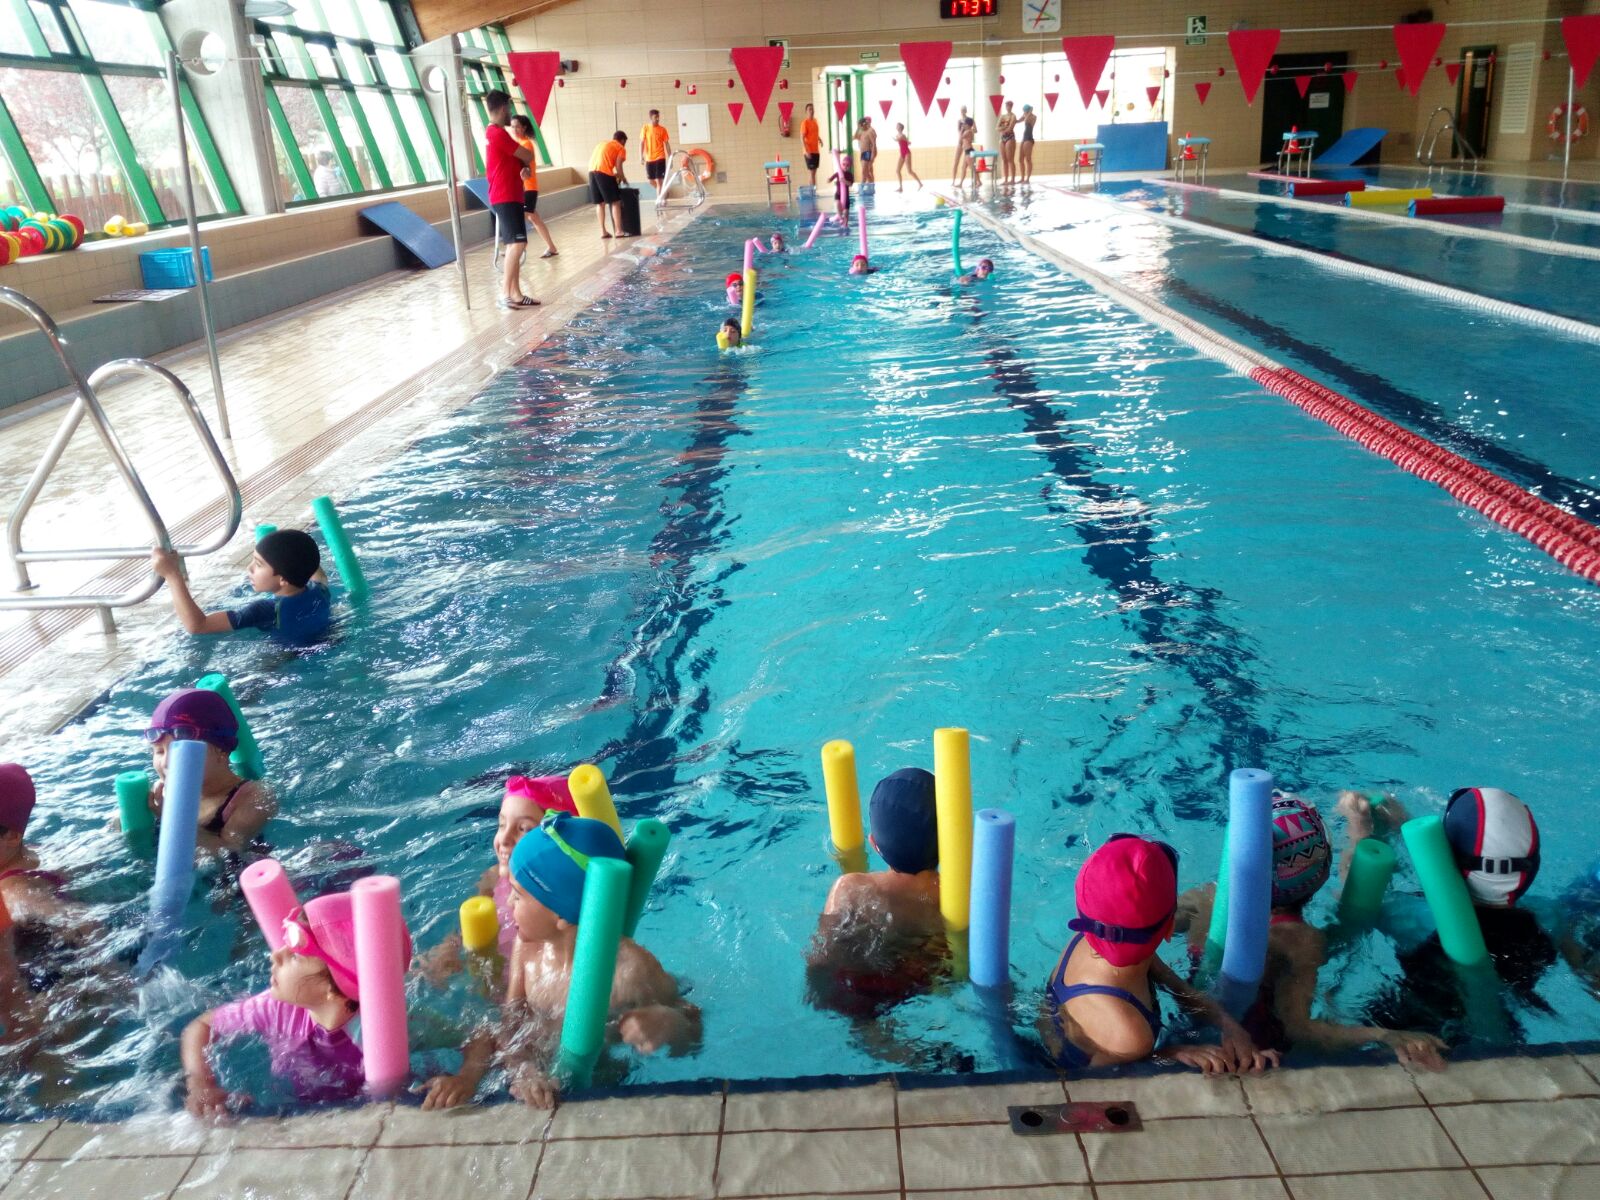 Piscina municipal cubierta Paiporta - cursos natacion niños